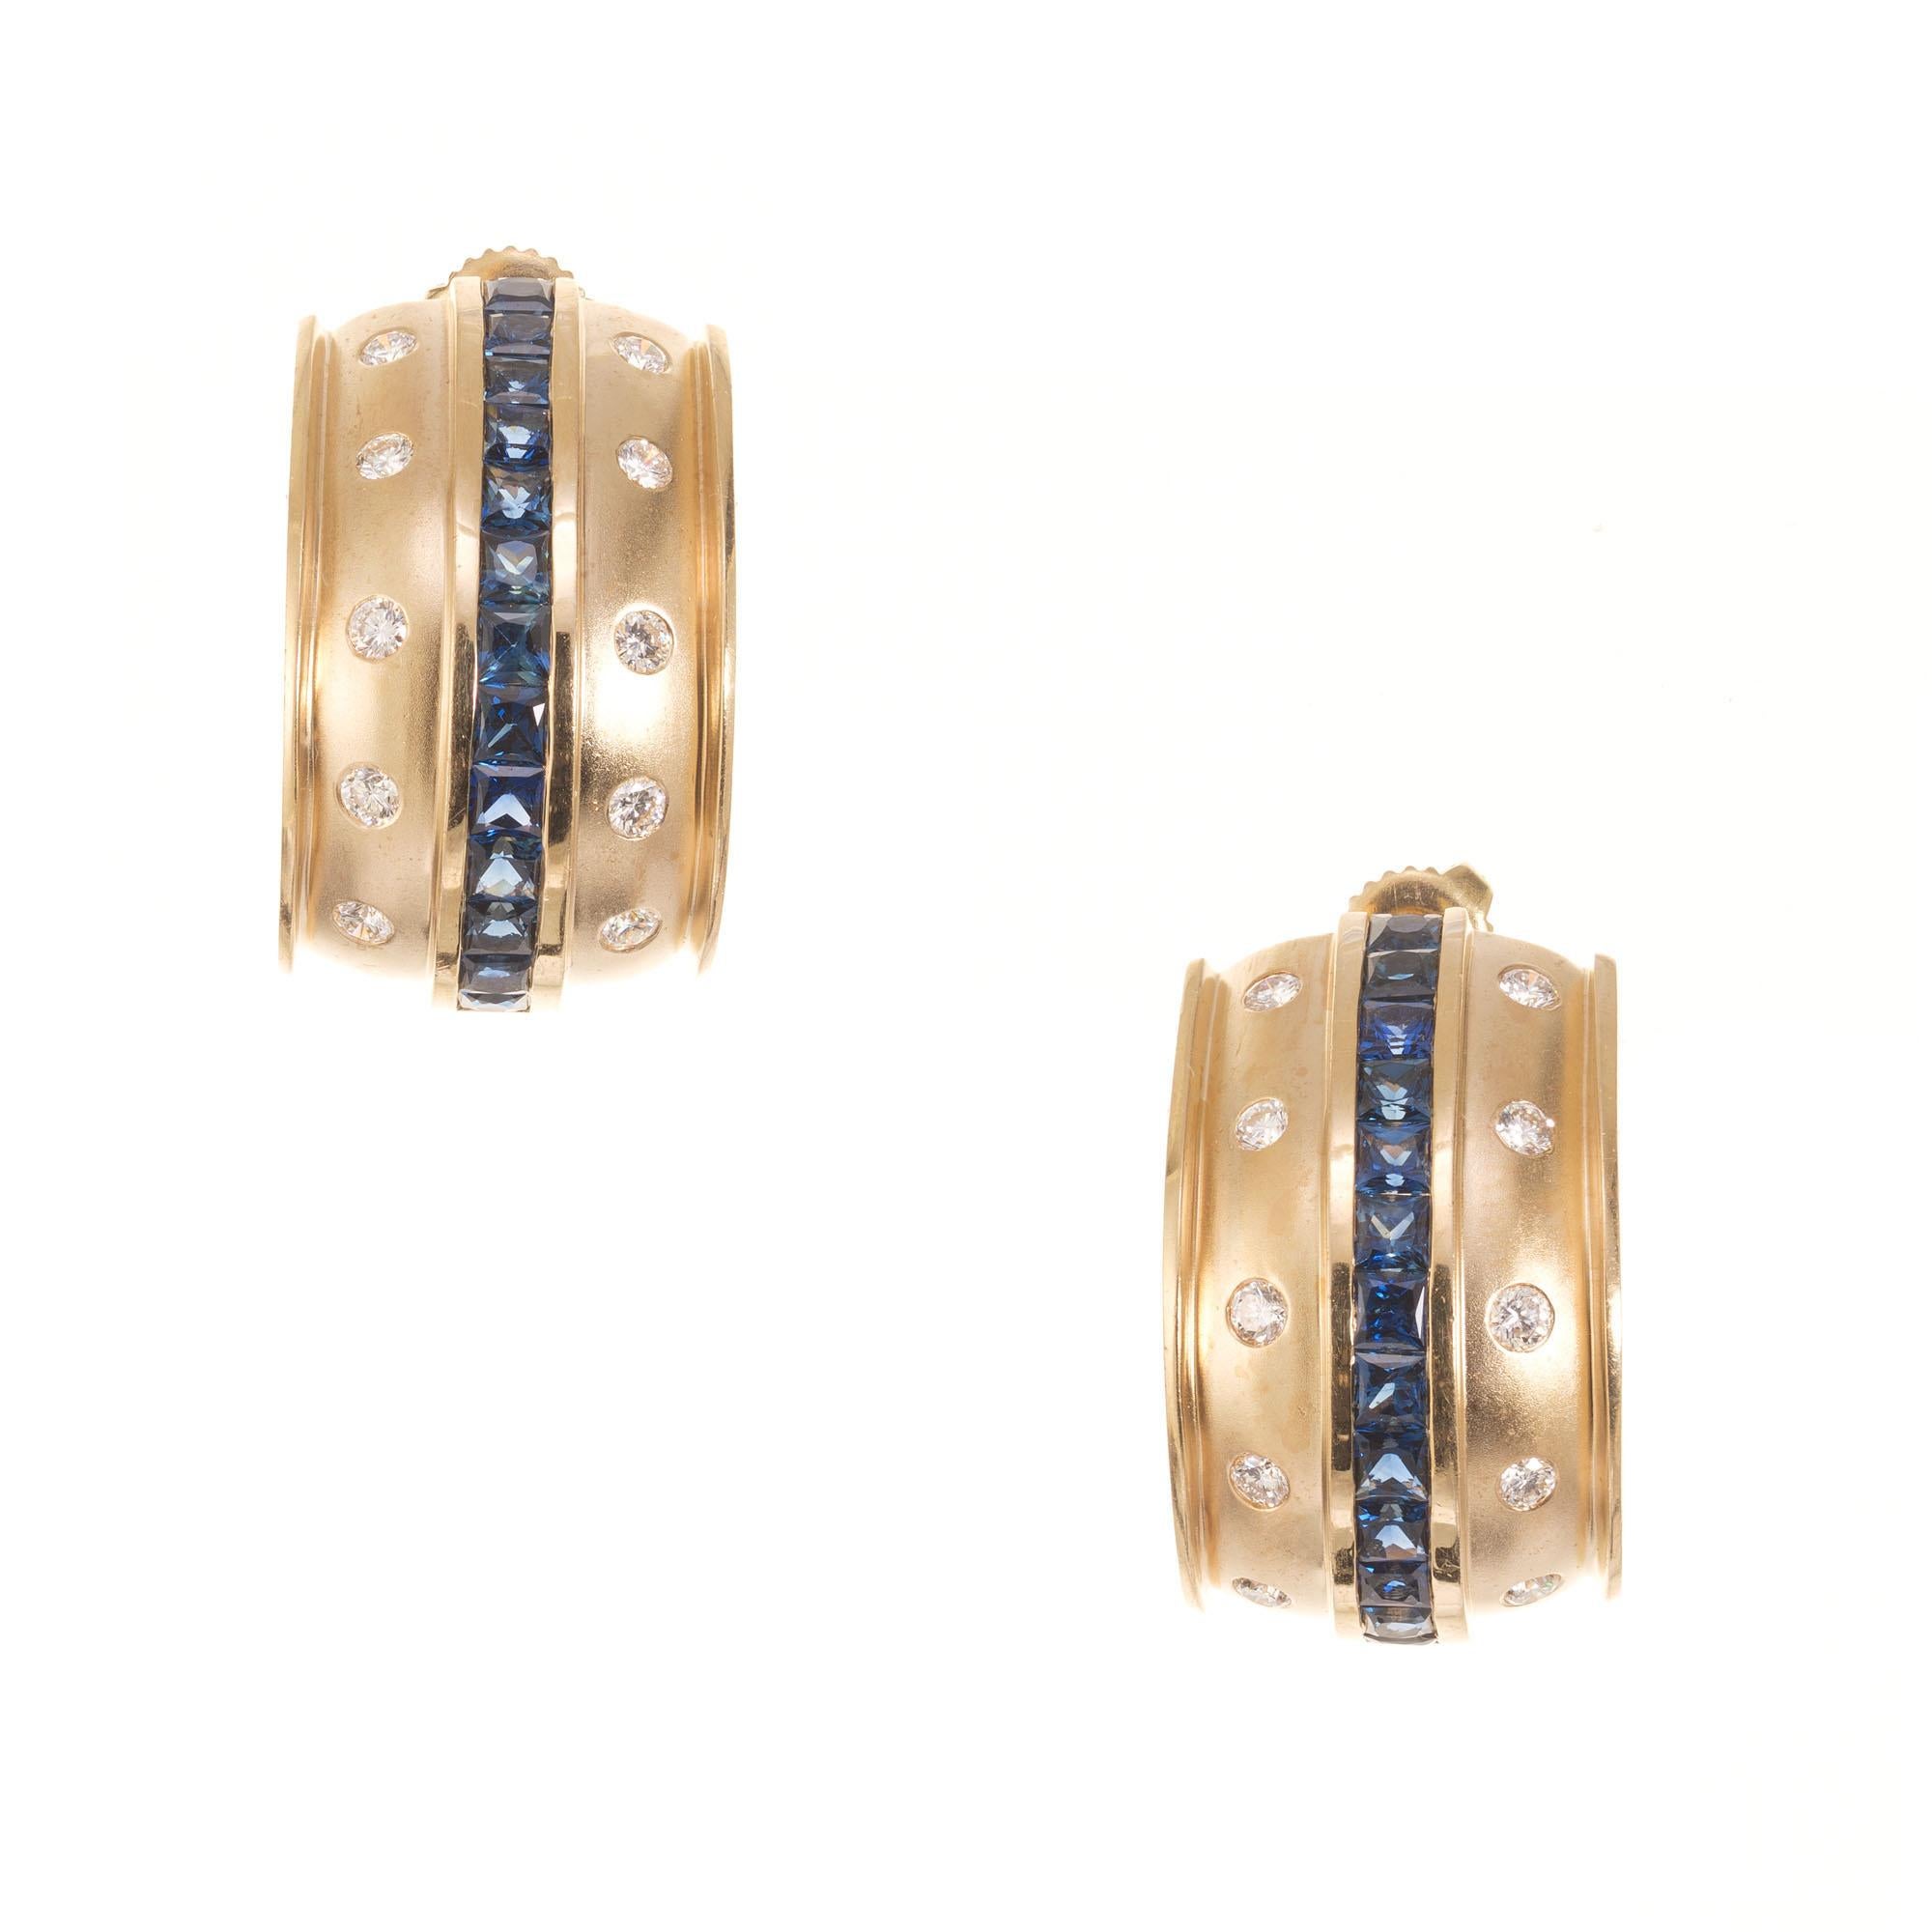 1970er Jahre Diamant und Saphir halb Reif Ohrringe. 26 quadratisch geschliffene Saphire akzentuiert mit 20 runden Diamanten in 14 Karat Gelbgold gefasst.

20 runde Diamanten mit einem Gesamtgewicht von ca. 0.80cts.  H-I SI
26 quadratisch